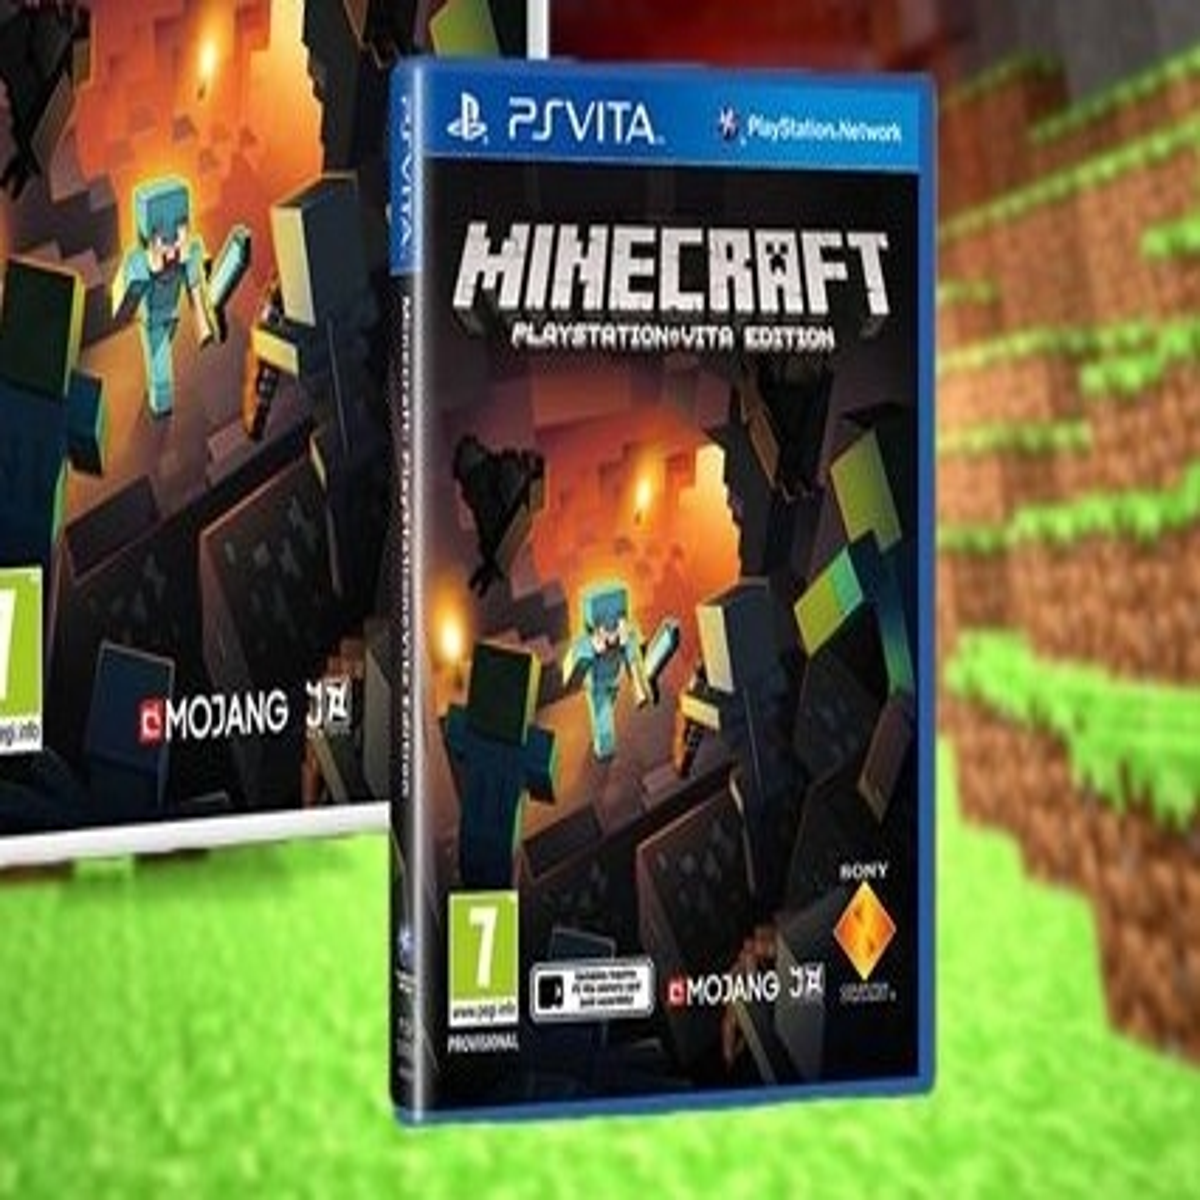 Minecraft - Jogos PS4  PlayStation (Portugal)